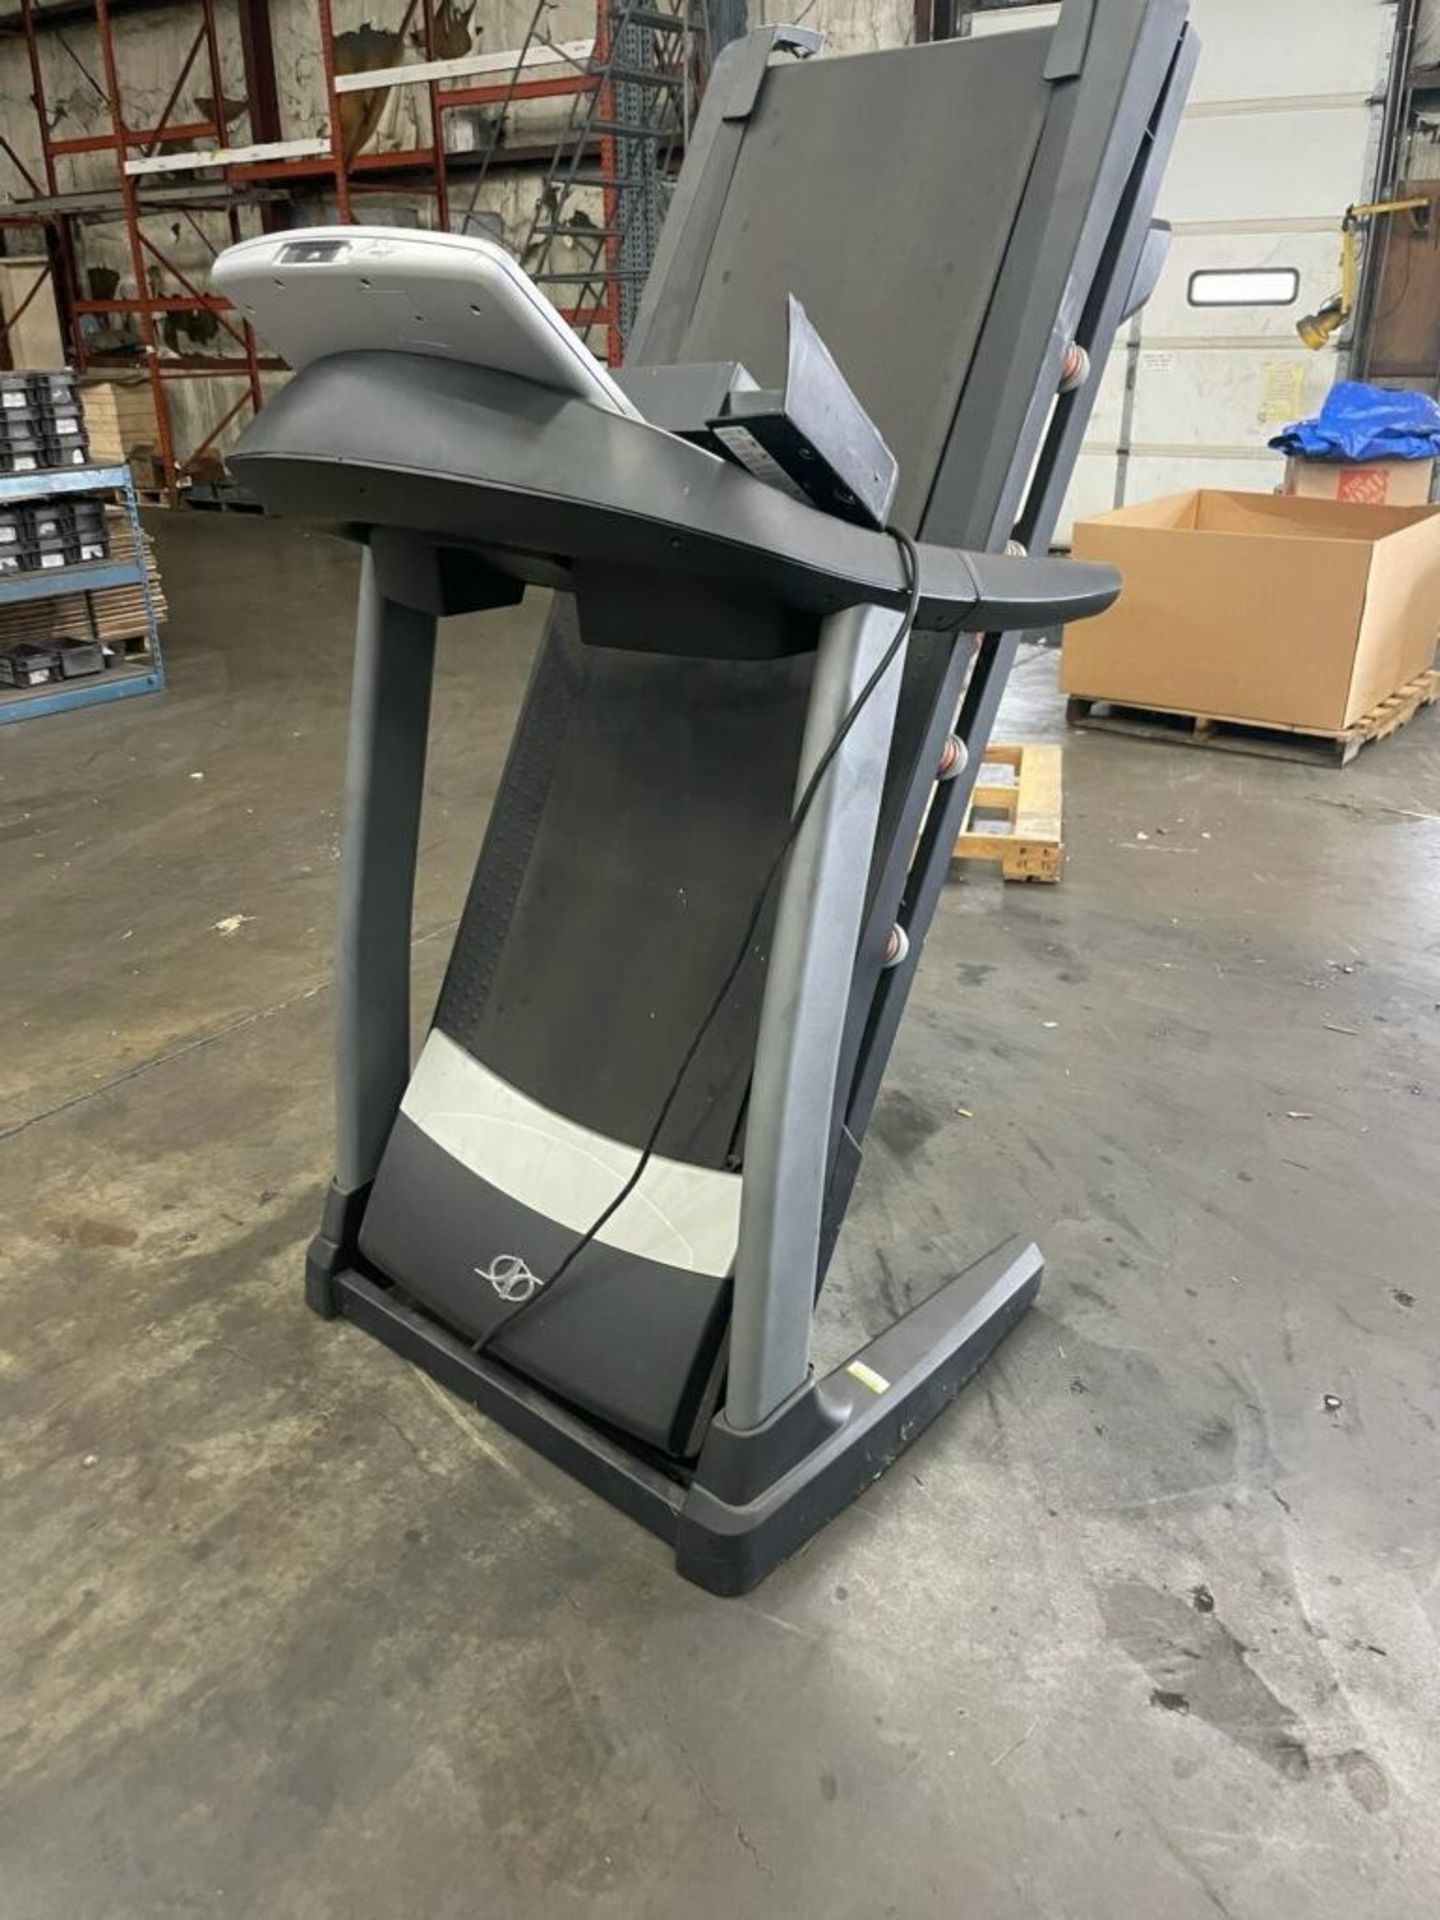 Nordic Track C900 Pro Treadmill